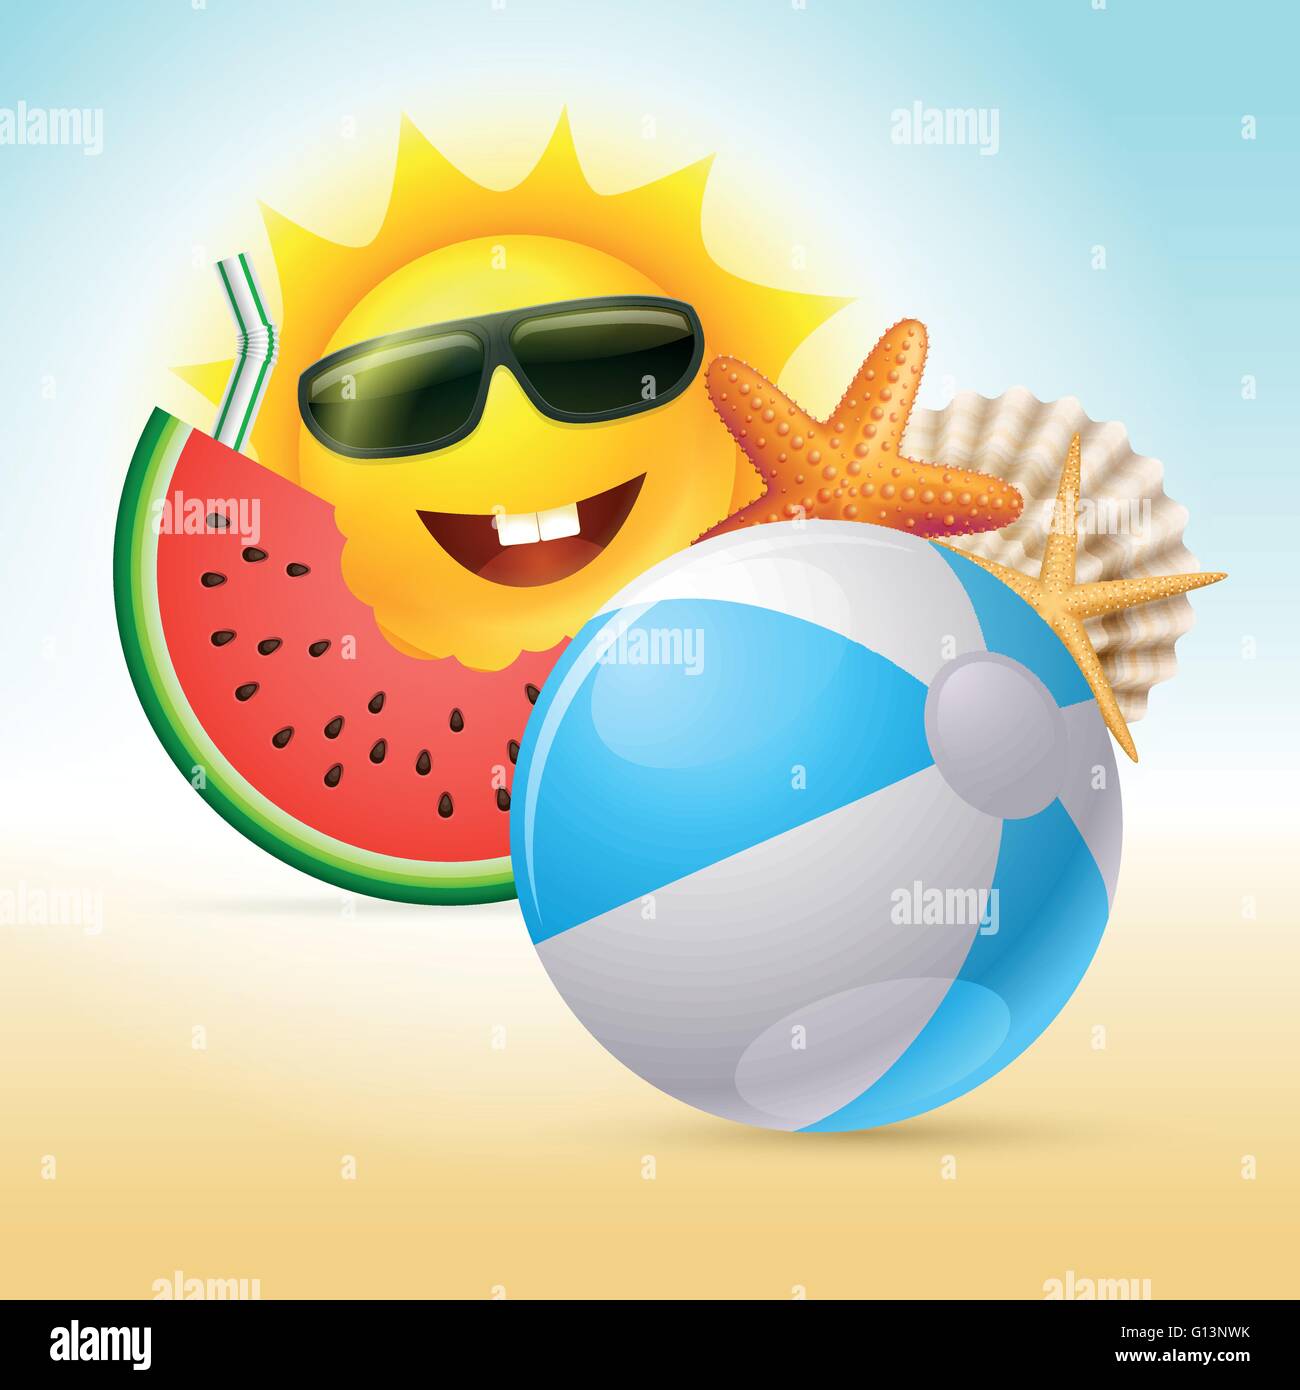 Vettore concetto estate illustrazione. Cartoon sun carattere, cocomero, stelle marine, shell, palla spiaggia e paglia. Illustrazione Vettoriale